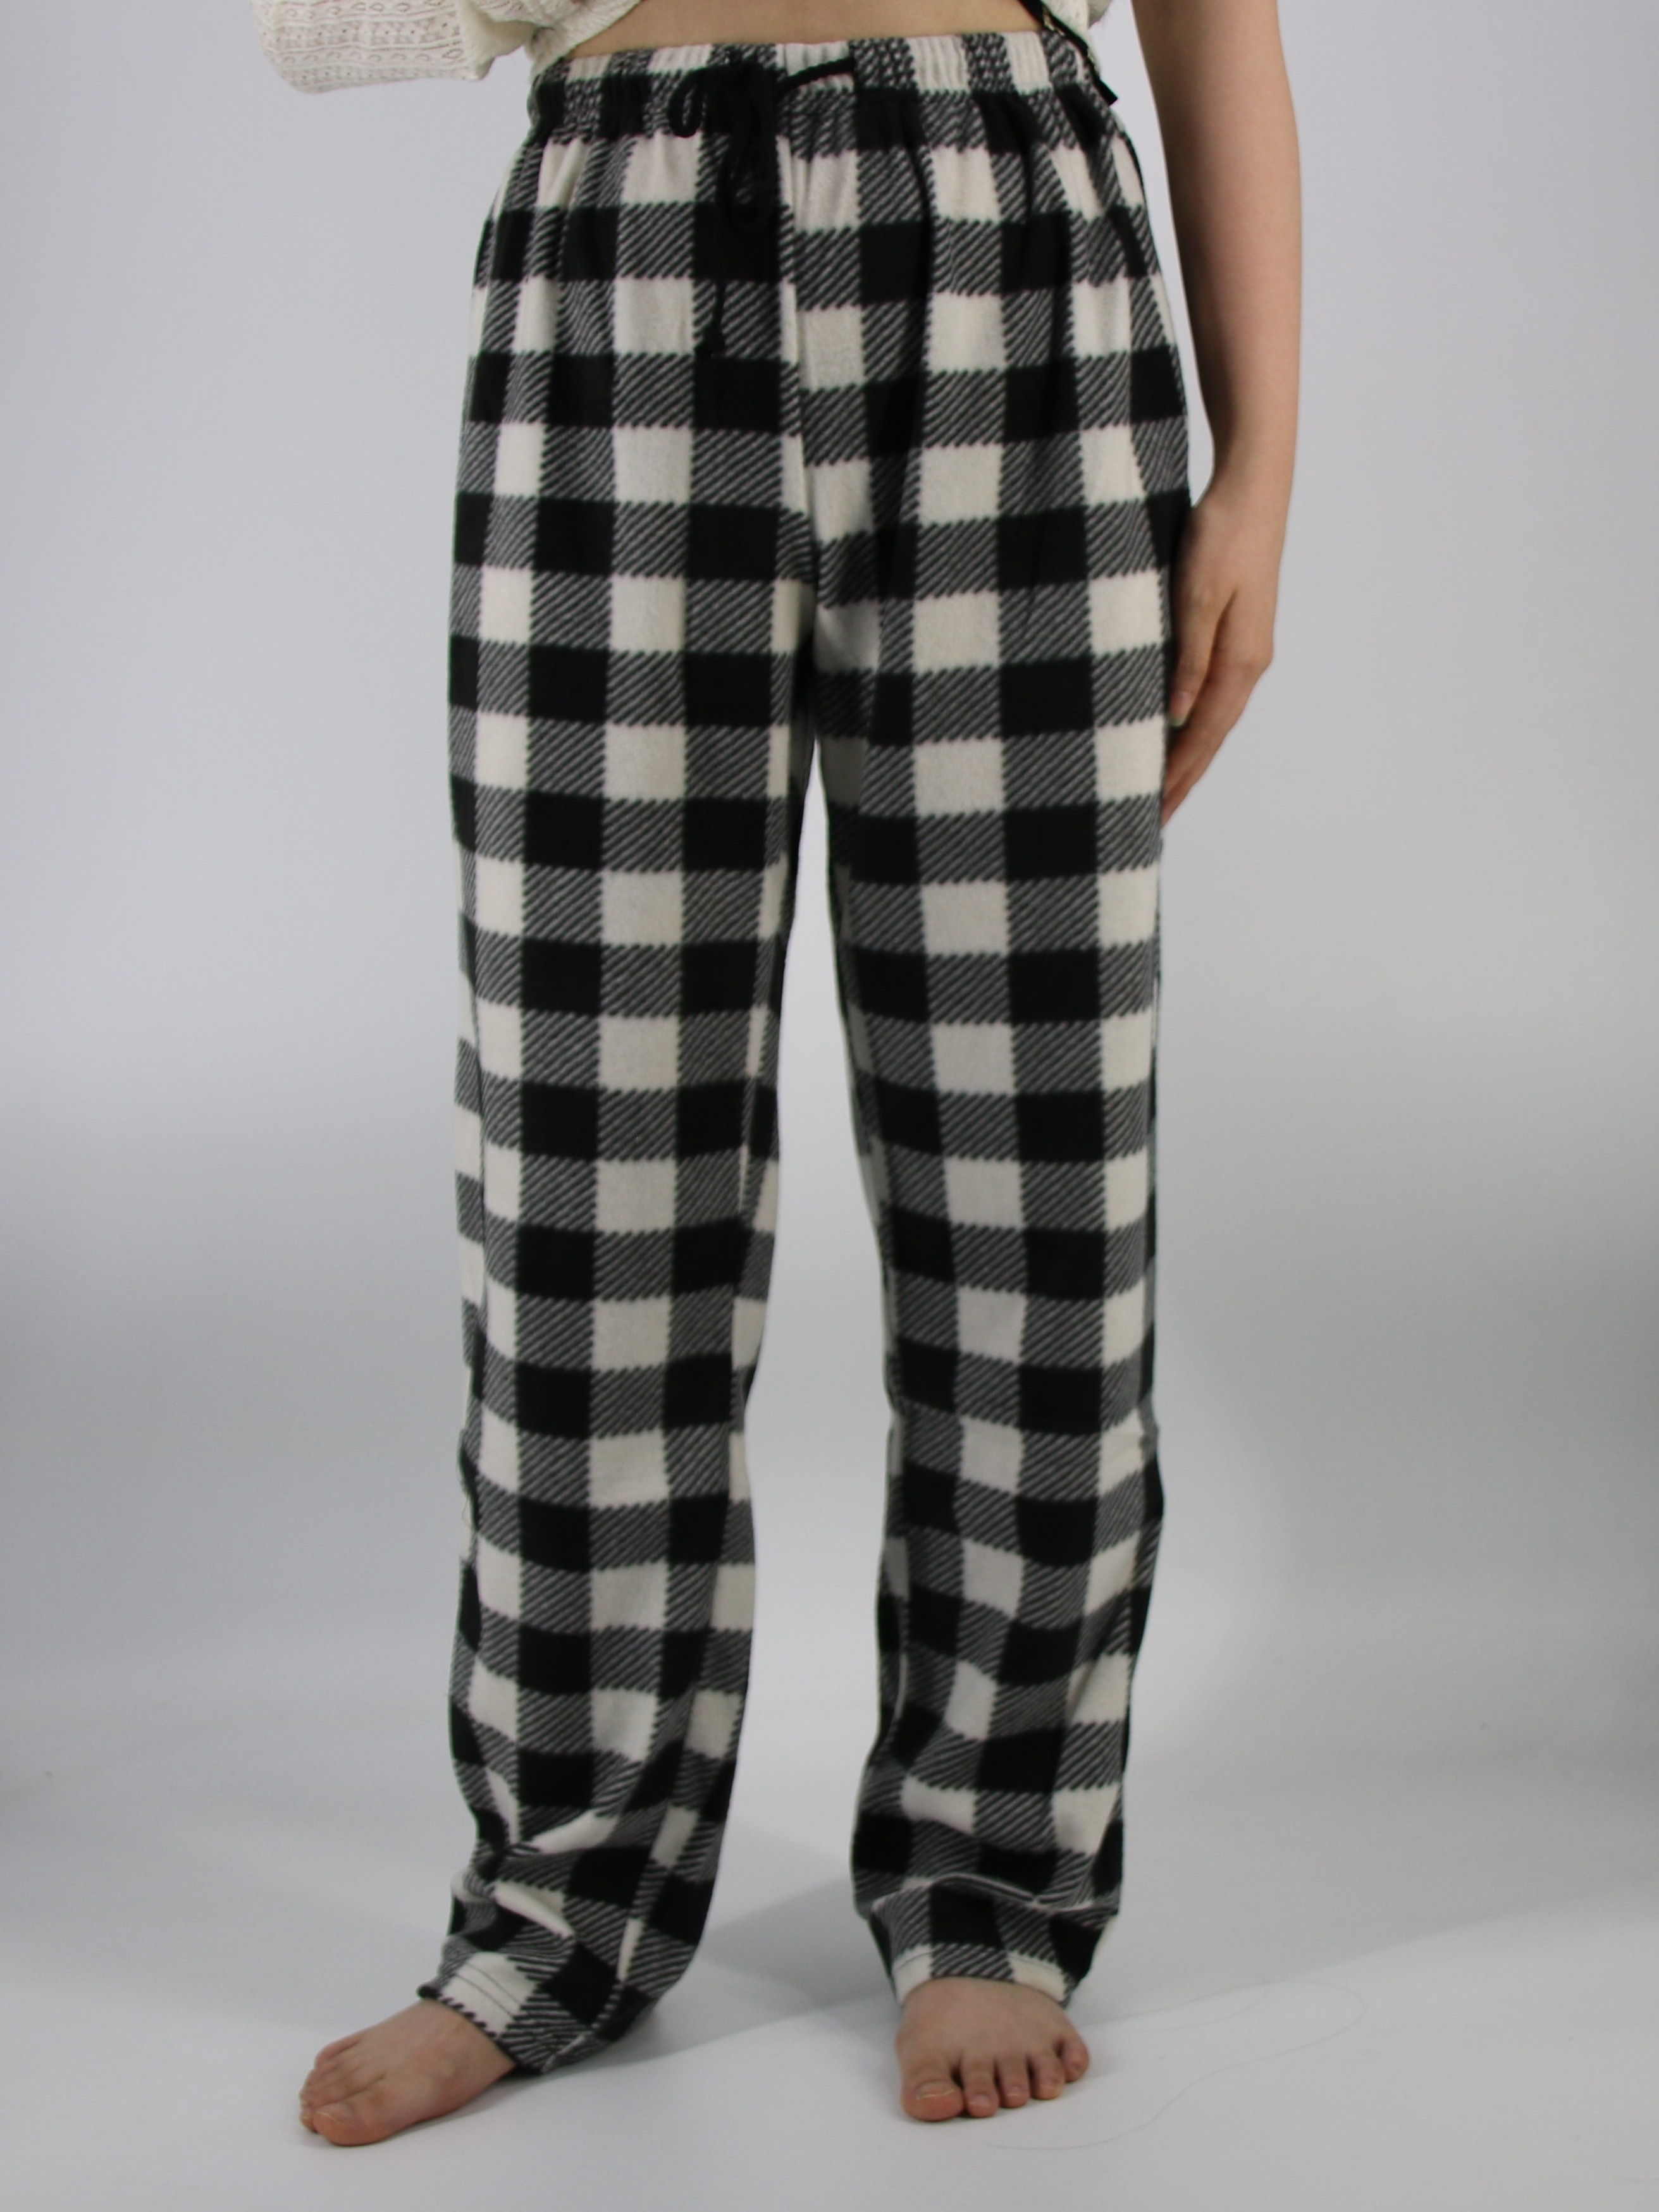 Plaid Pyjama Pants - Holiday plaid